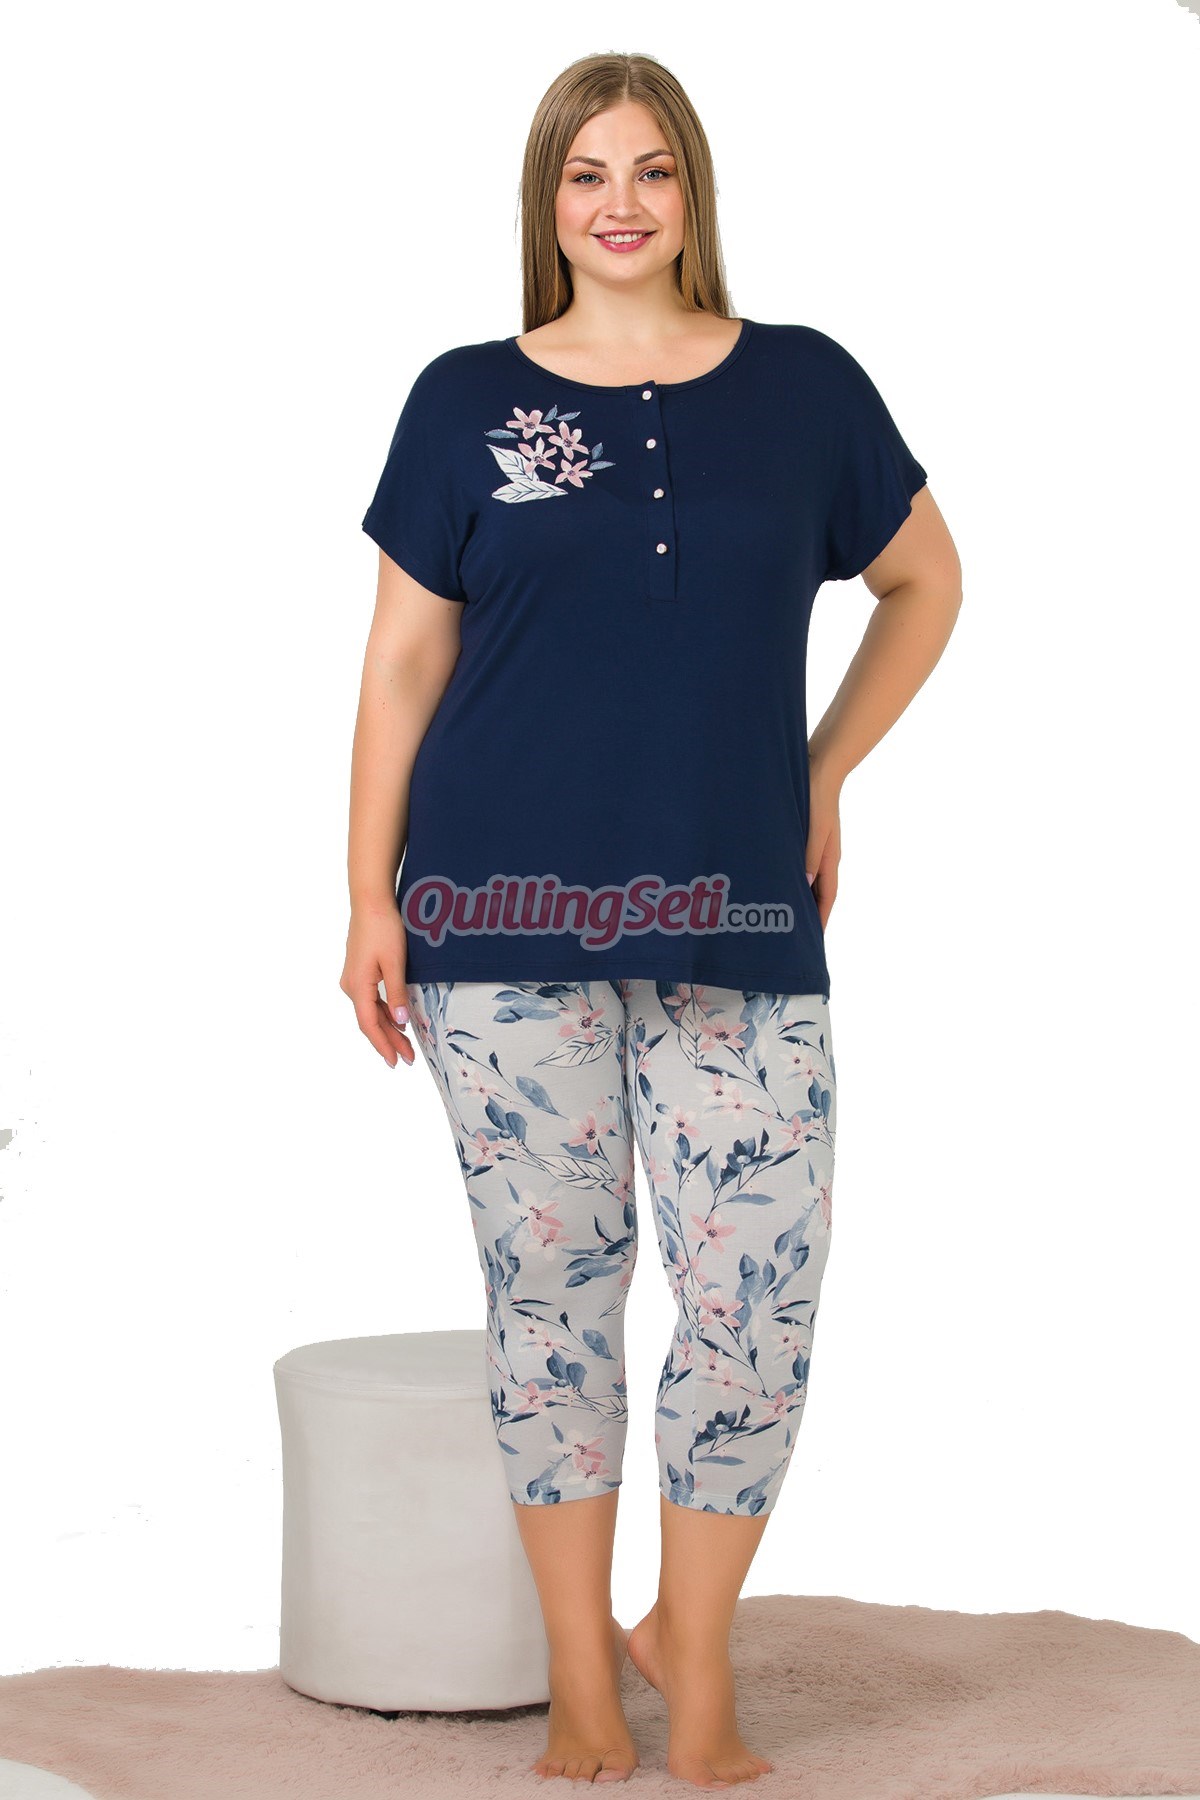 Lacivert-Gri Renk ve Çiçek Desenli Lady 10646 Battal Büyük Beden Kapri Pijama Takımı